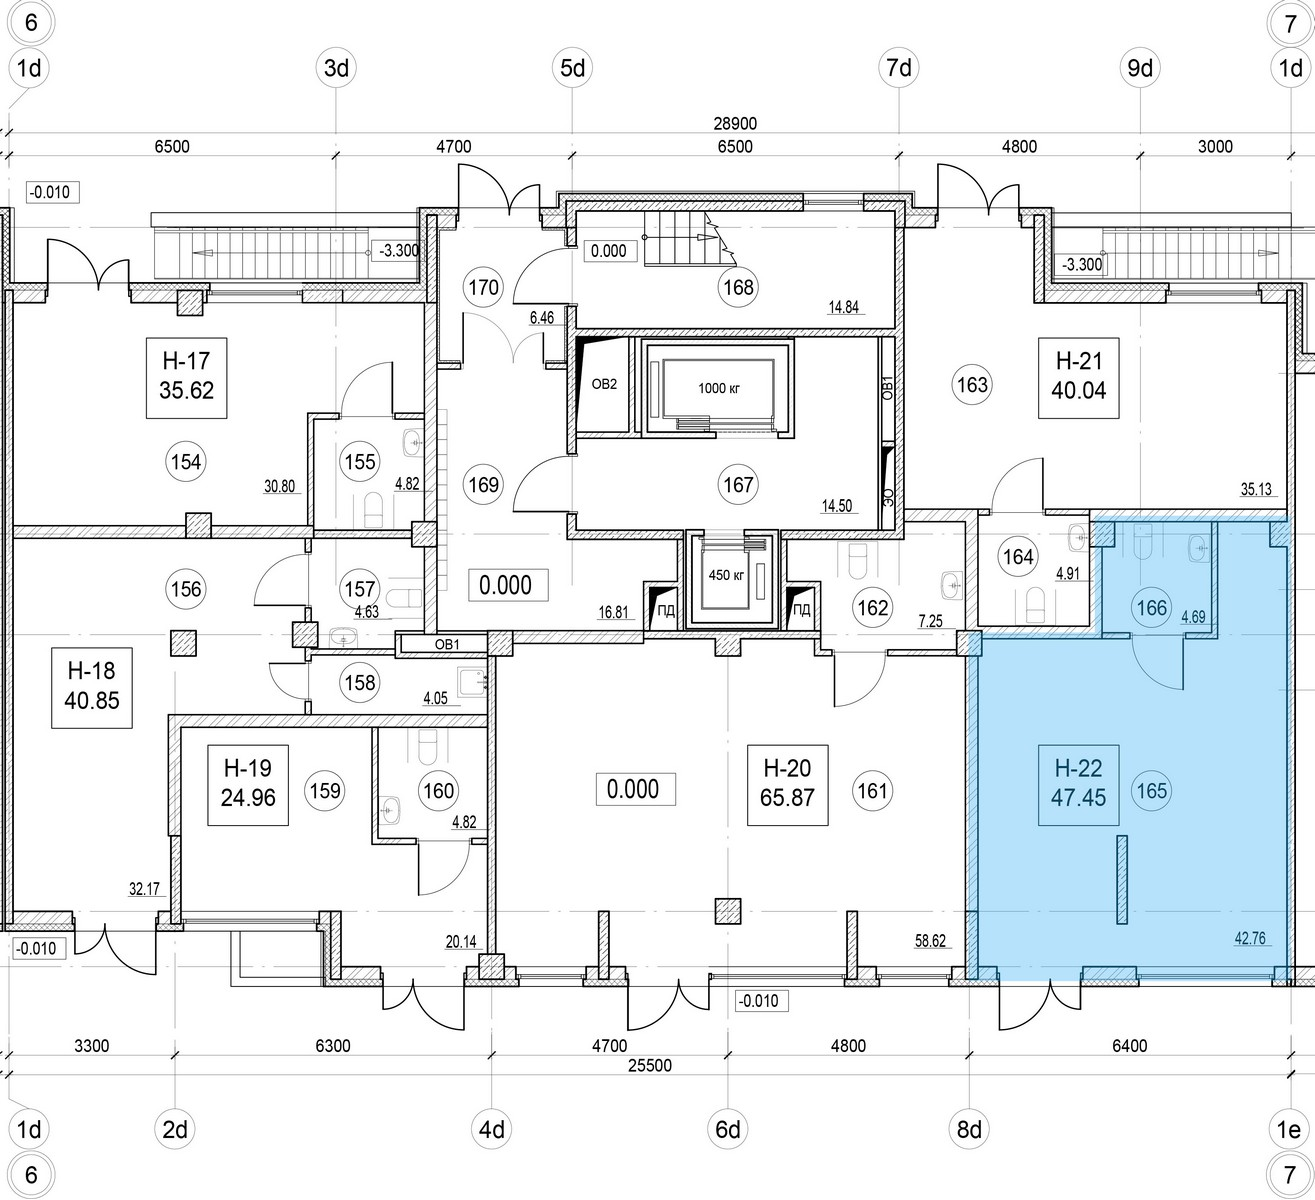 Помещение, 47.45 м² в ЖК "ID Murino II" - планировка, фото №1